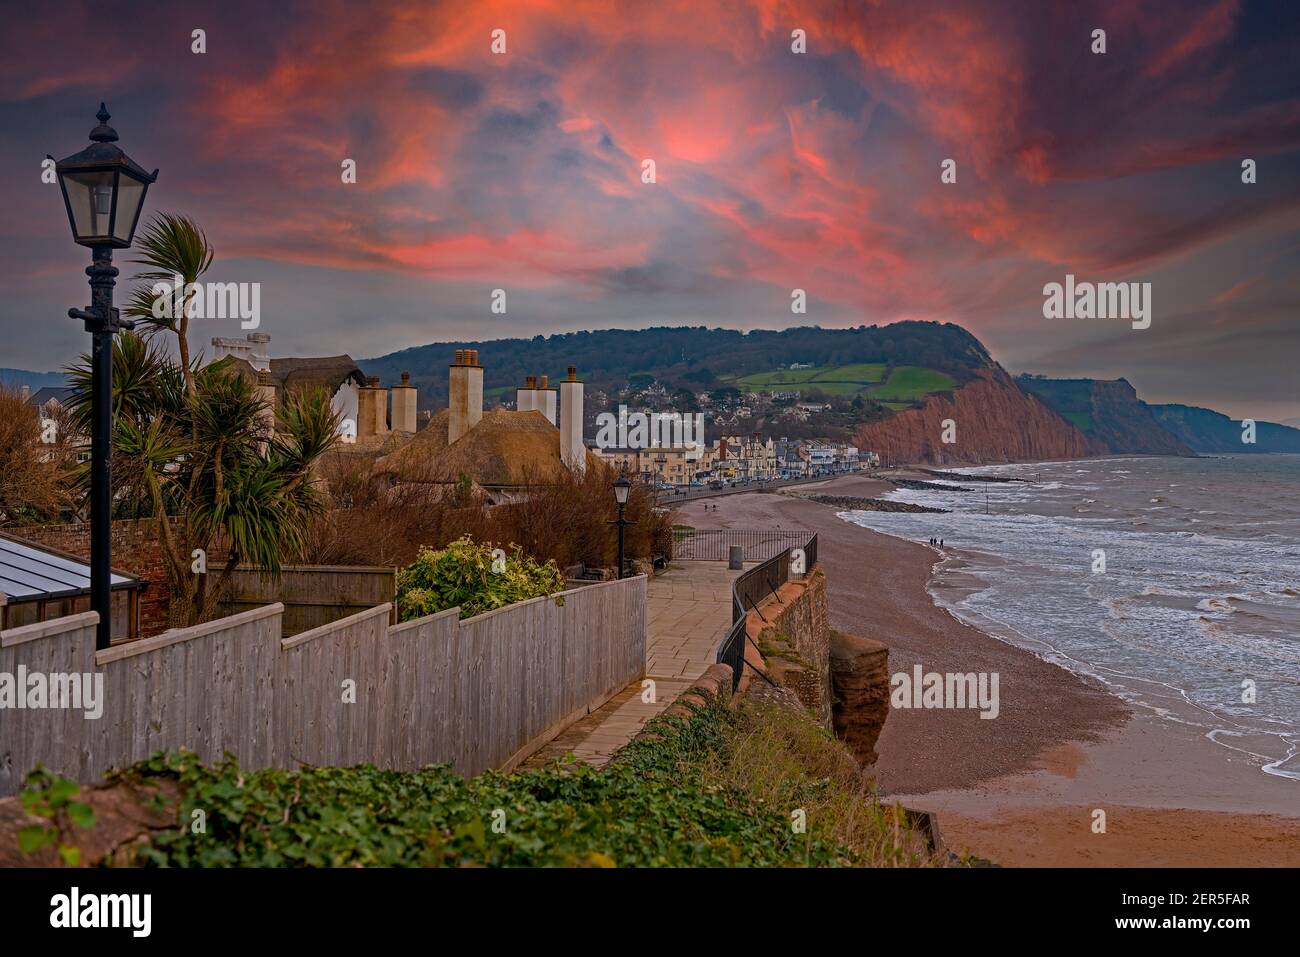 Front de mer, plage et littoral de Sidmouth, une petite ville balnéaire populaire de la côte sud à Devon, au sud-ouest de l'Angleterre Banque D'Images